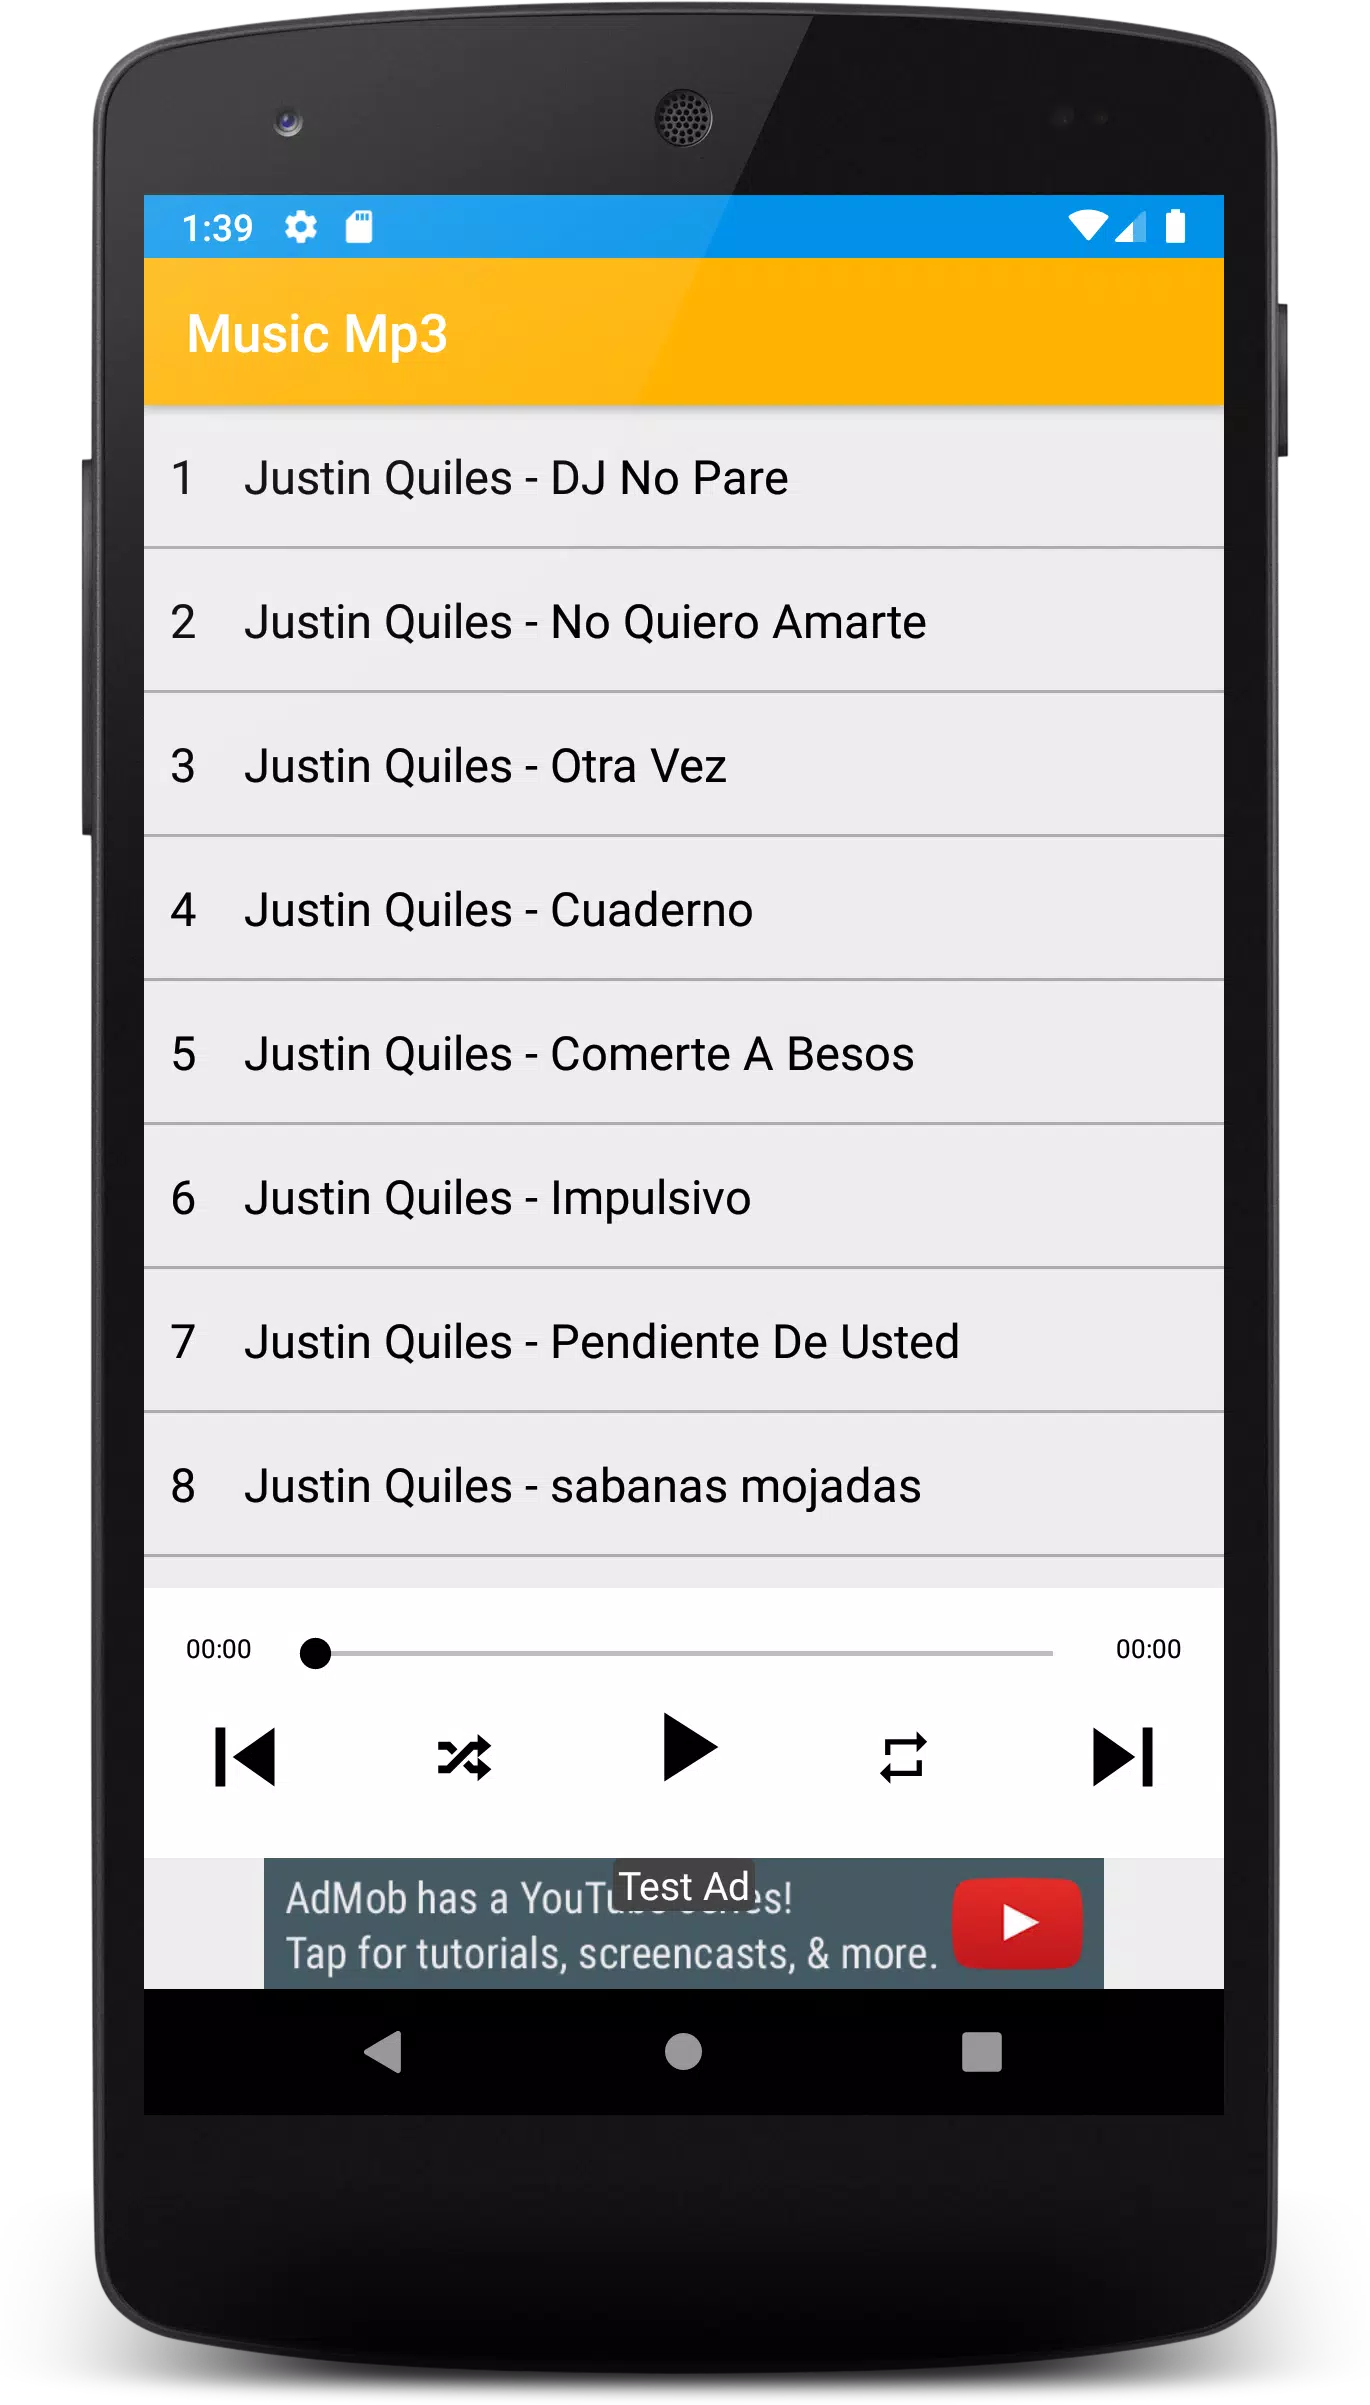 Descarga de APK de dj no pare descargar - Justin Quiles offline Mp3 para  Android